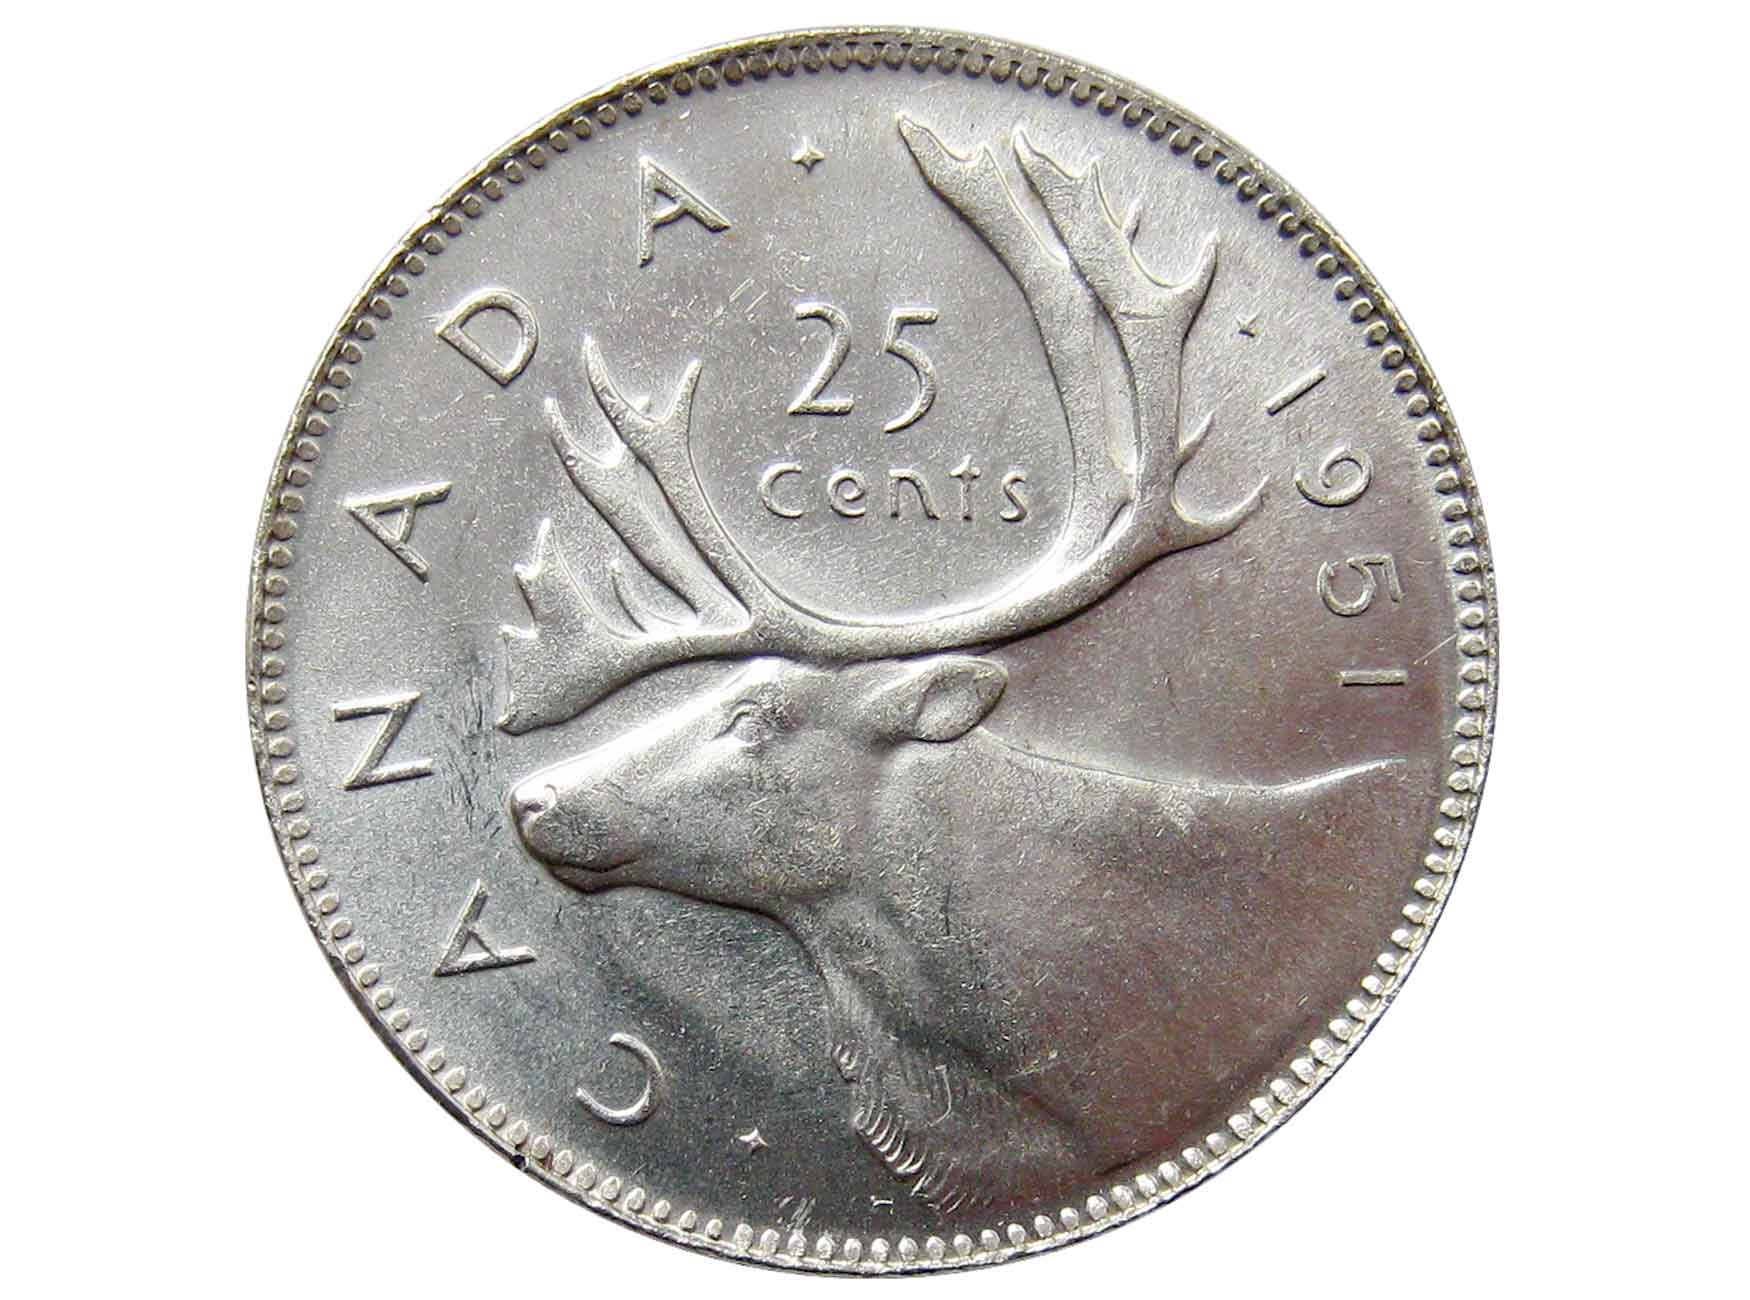 1951 25. Канада 25 центов вождь Текумсе. Канада 25 центов 1954. Канада 25 центов 1956. Канада 25 центов 2023.